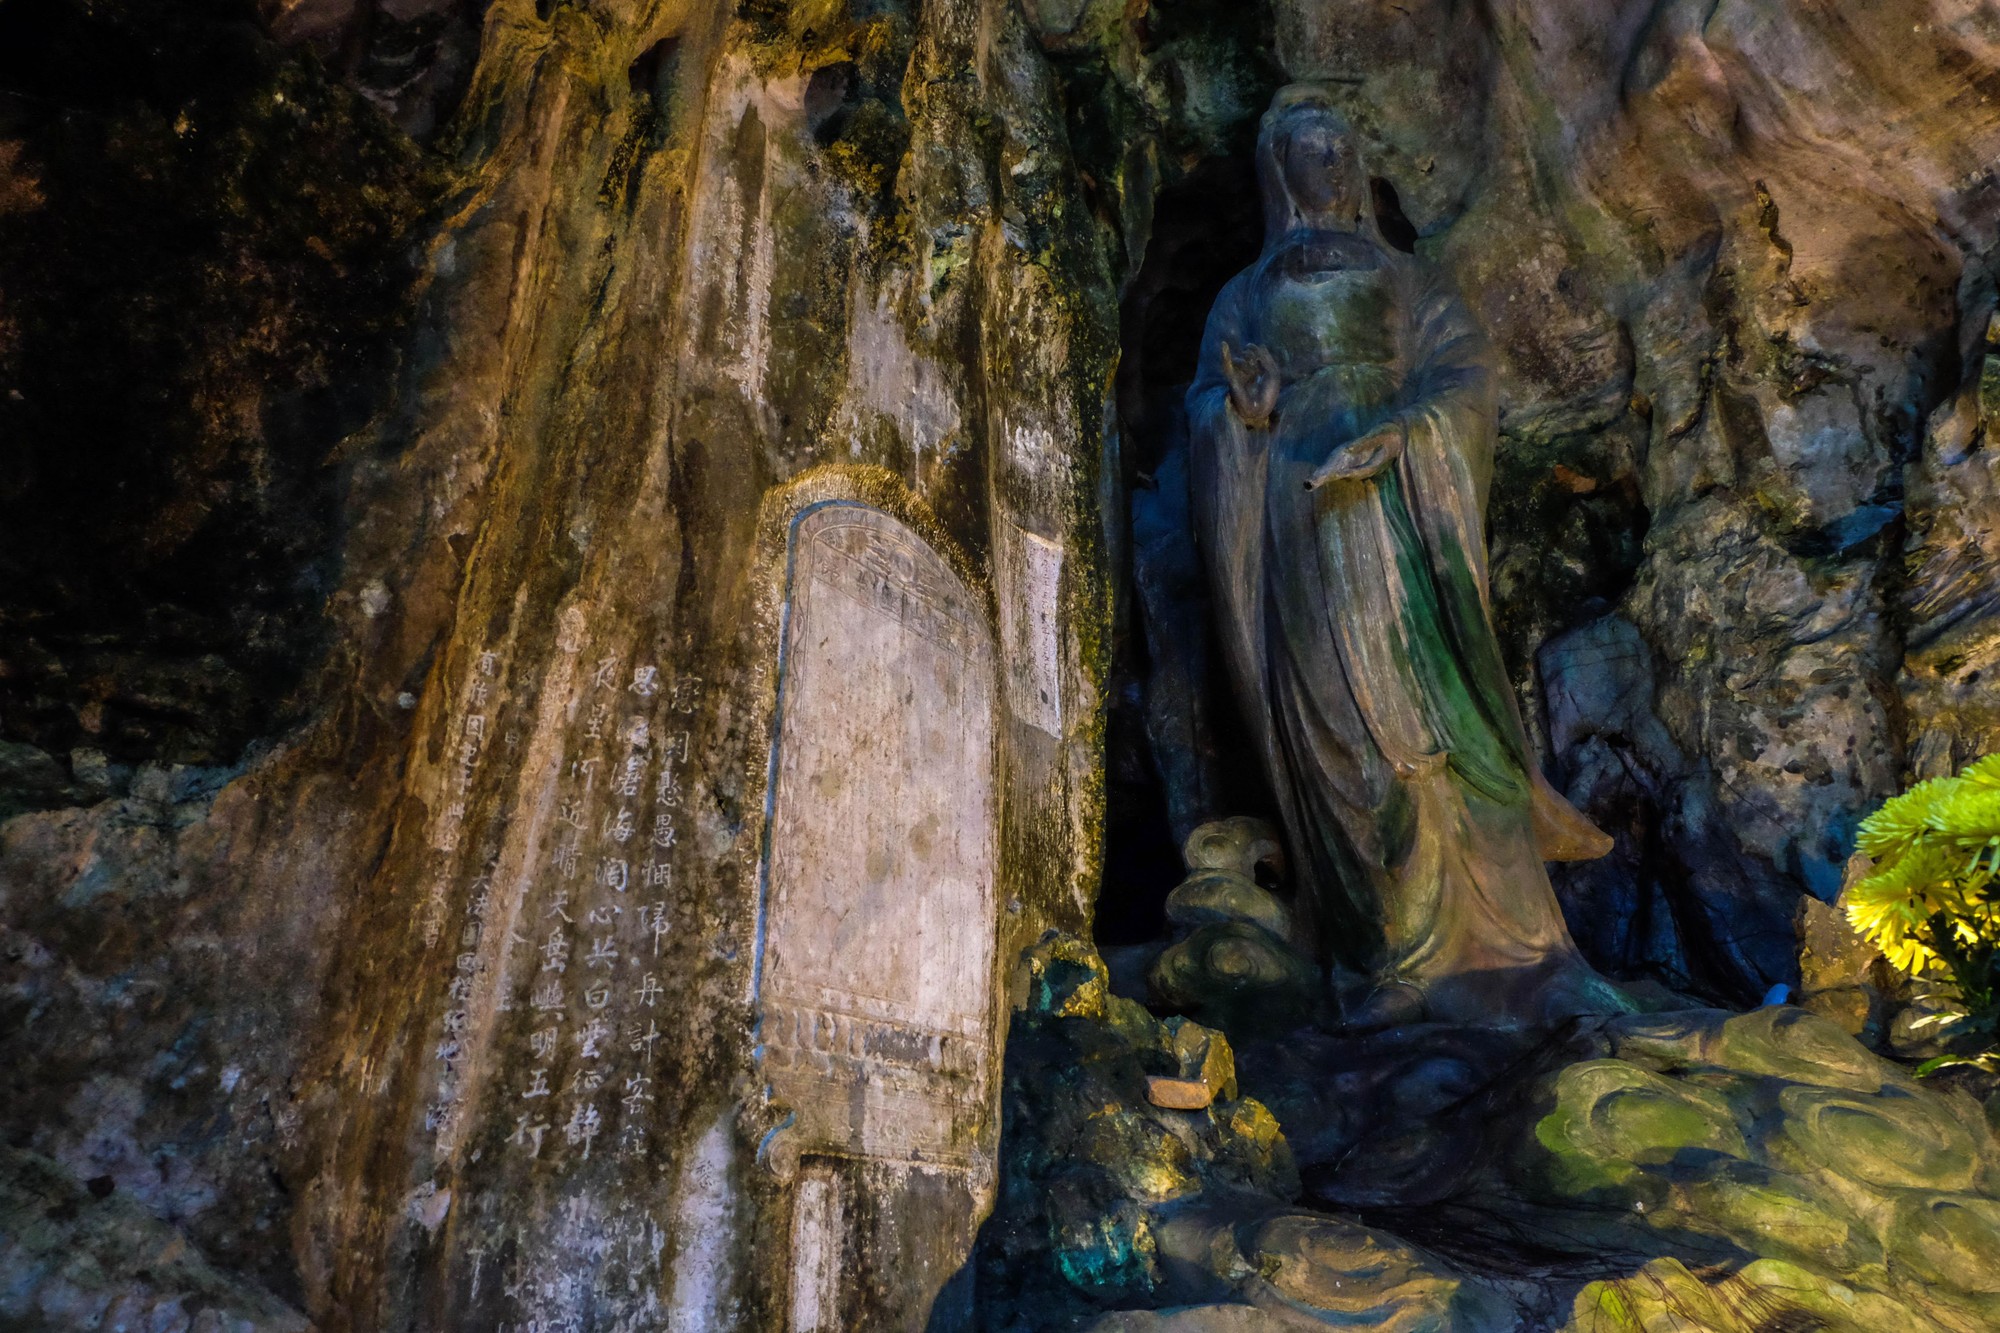 Cận cảnh Ma nhai trên núi Ngũ Hành Sơn vừa được UNESCO ghi nhận - Ảnh 2.